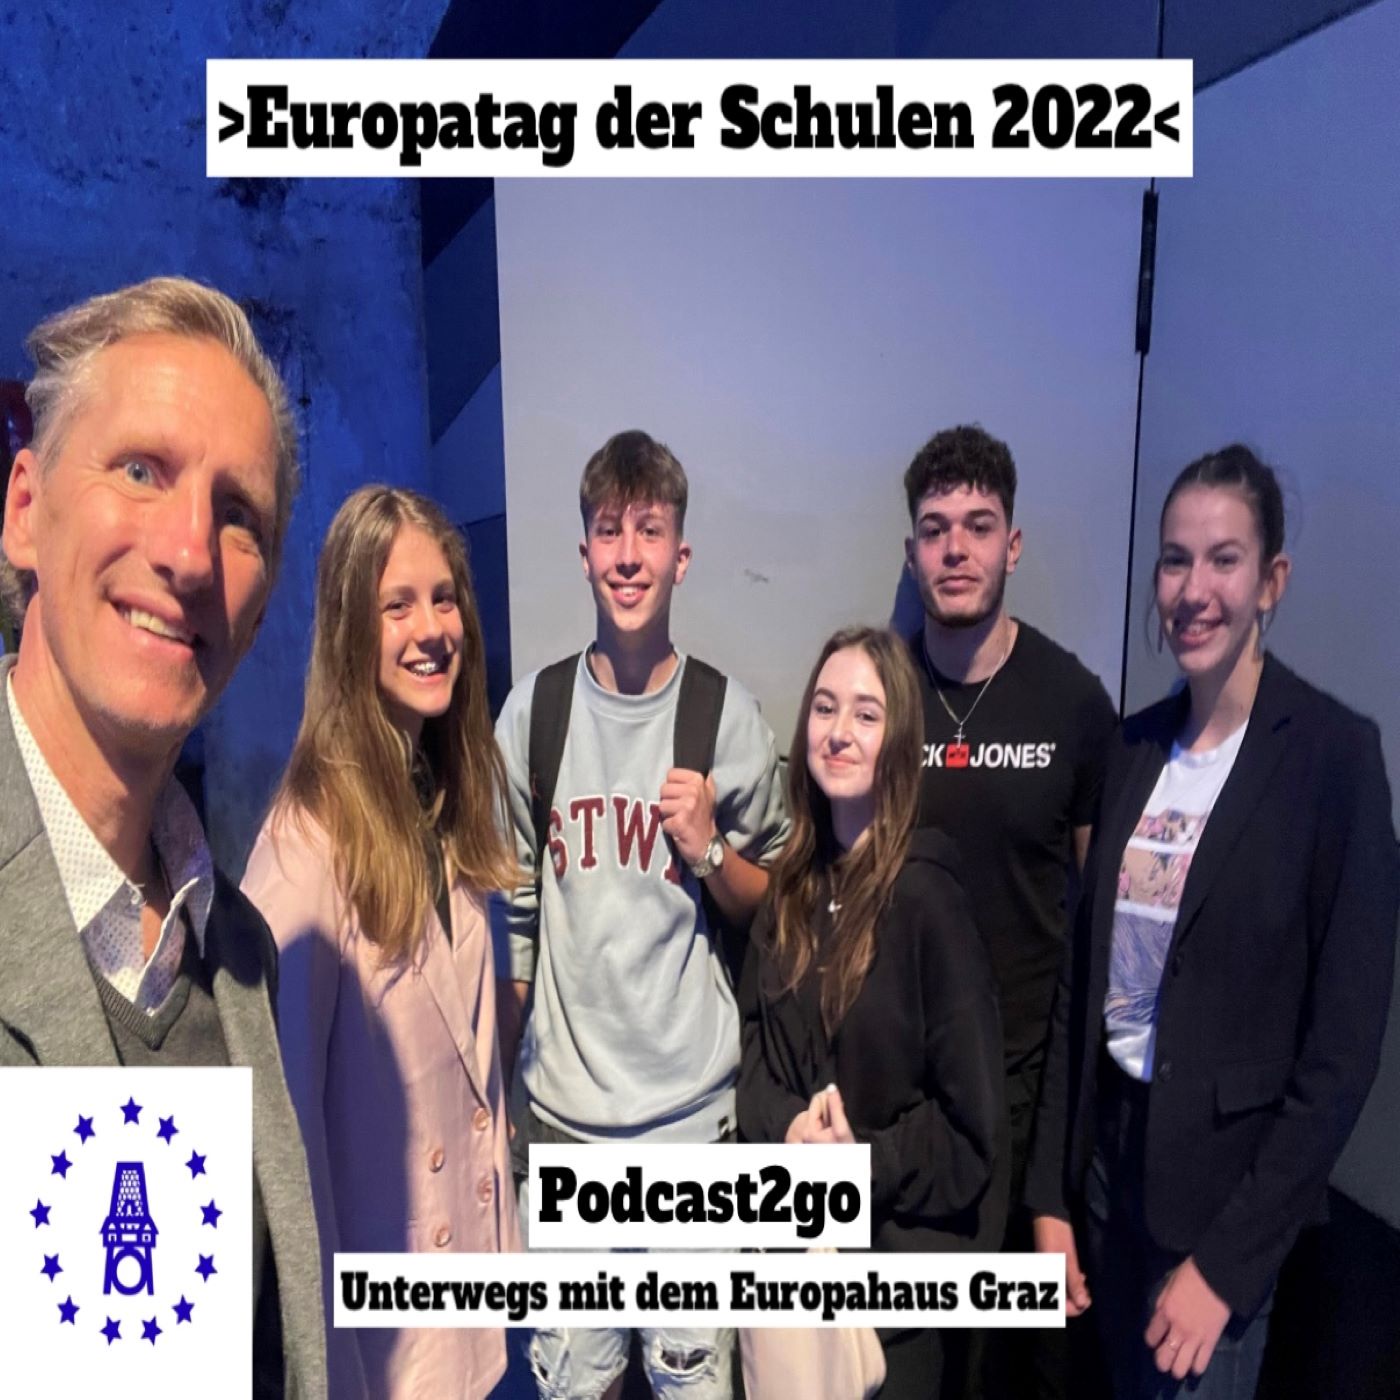 Podcast2go - Europatag der Schulen 2022